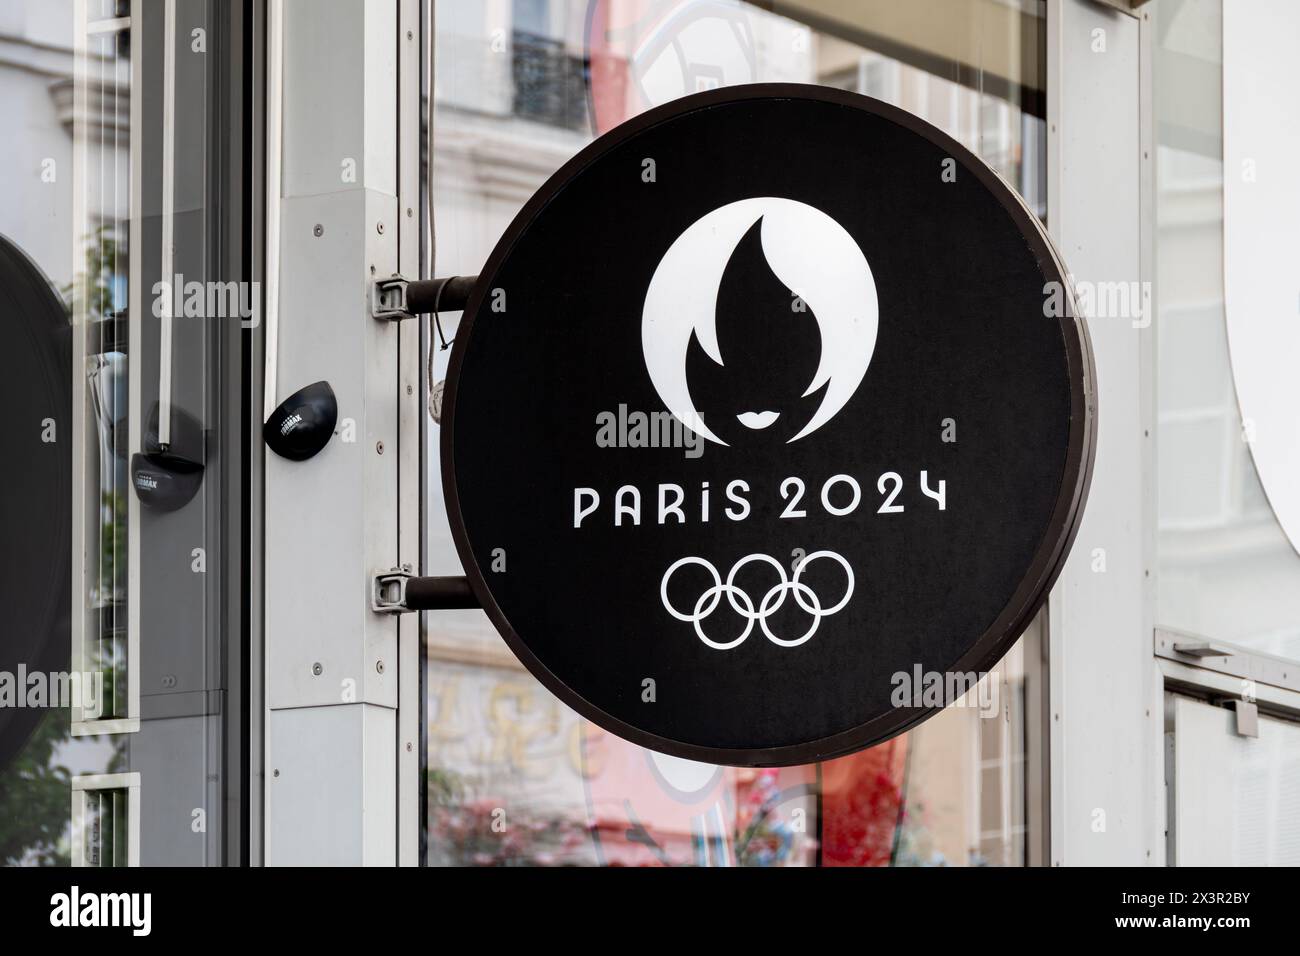 Segno del negozio ufficiale dei Giochi olimpici e paraolimpici estivi di Parigi 2024 con il logo ufficiale e gli anelli olimpici, Parigi, Francia Foto Stock